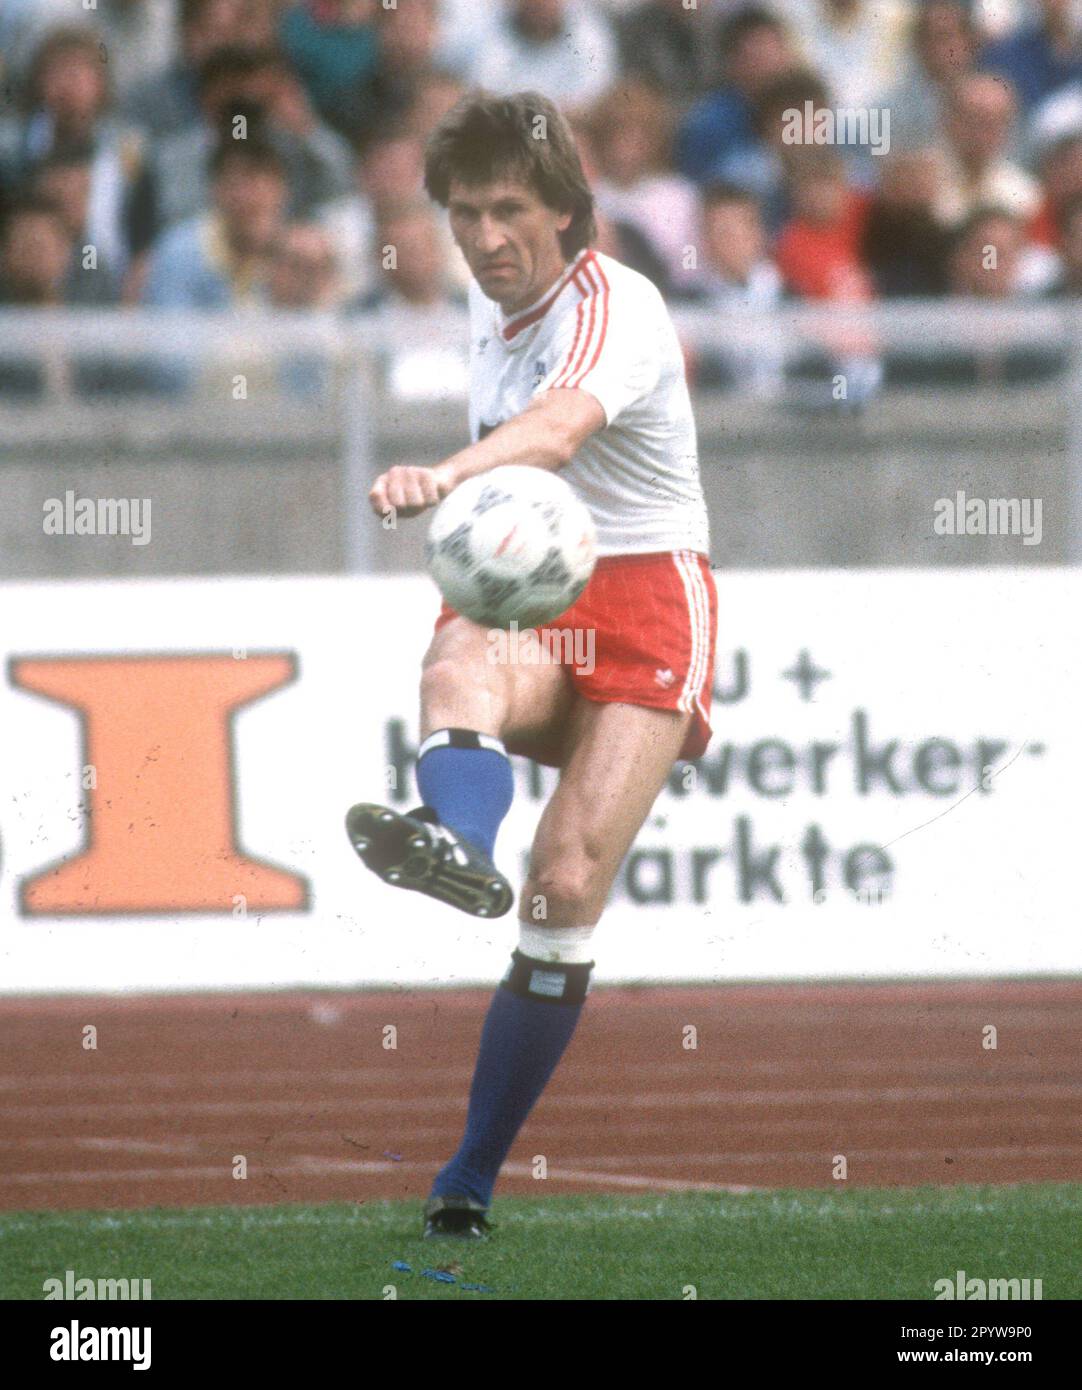 Coupe DFB finale : Hamburger SV - Stuttgarter Kickers 3:1 /20.06.1987/ Manfred Kaltz (HSV) croise [traduction automatique] Banque D'Images